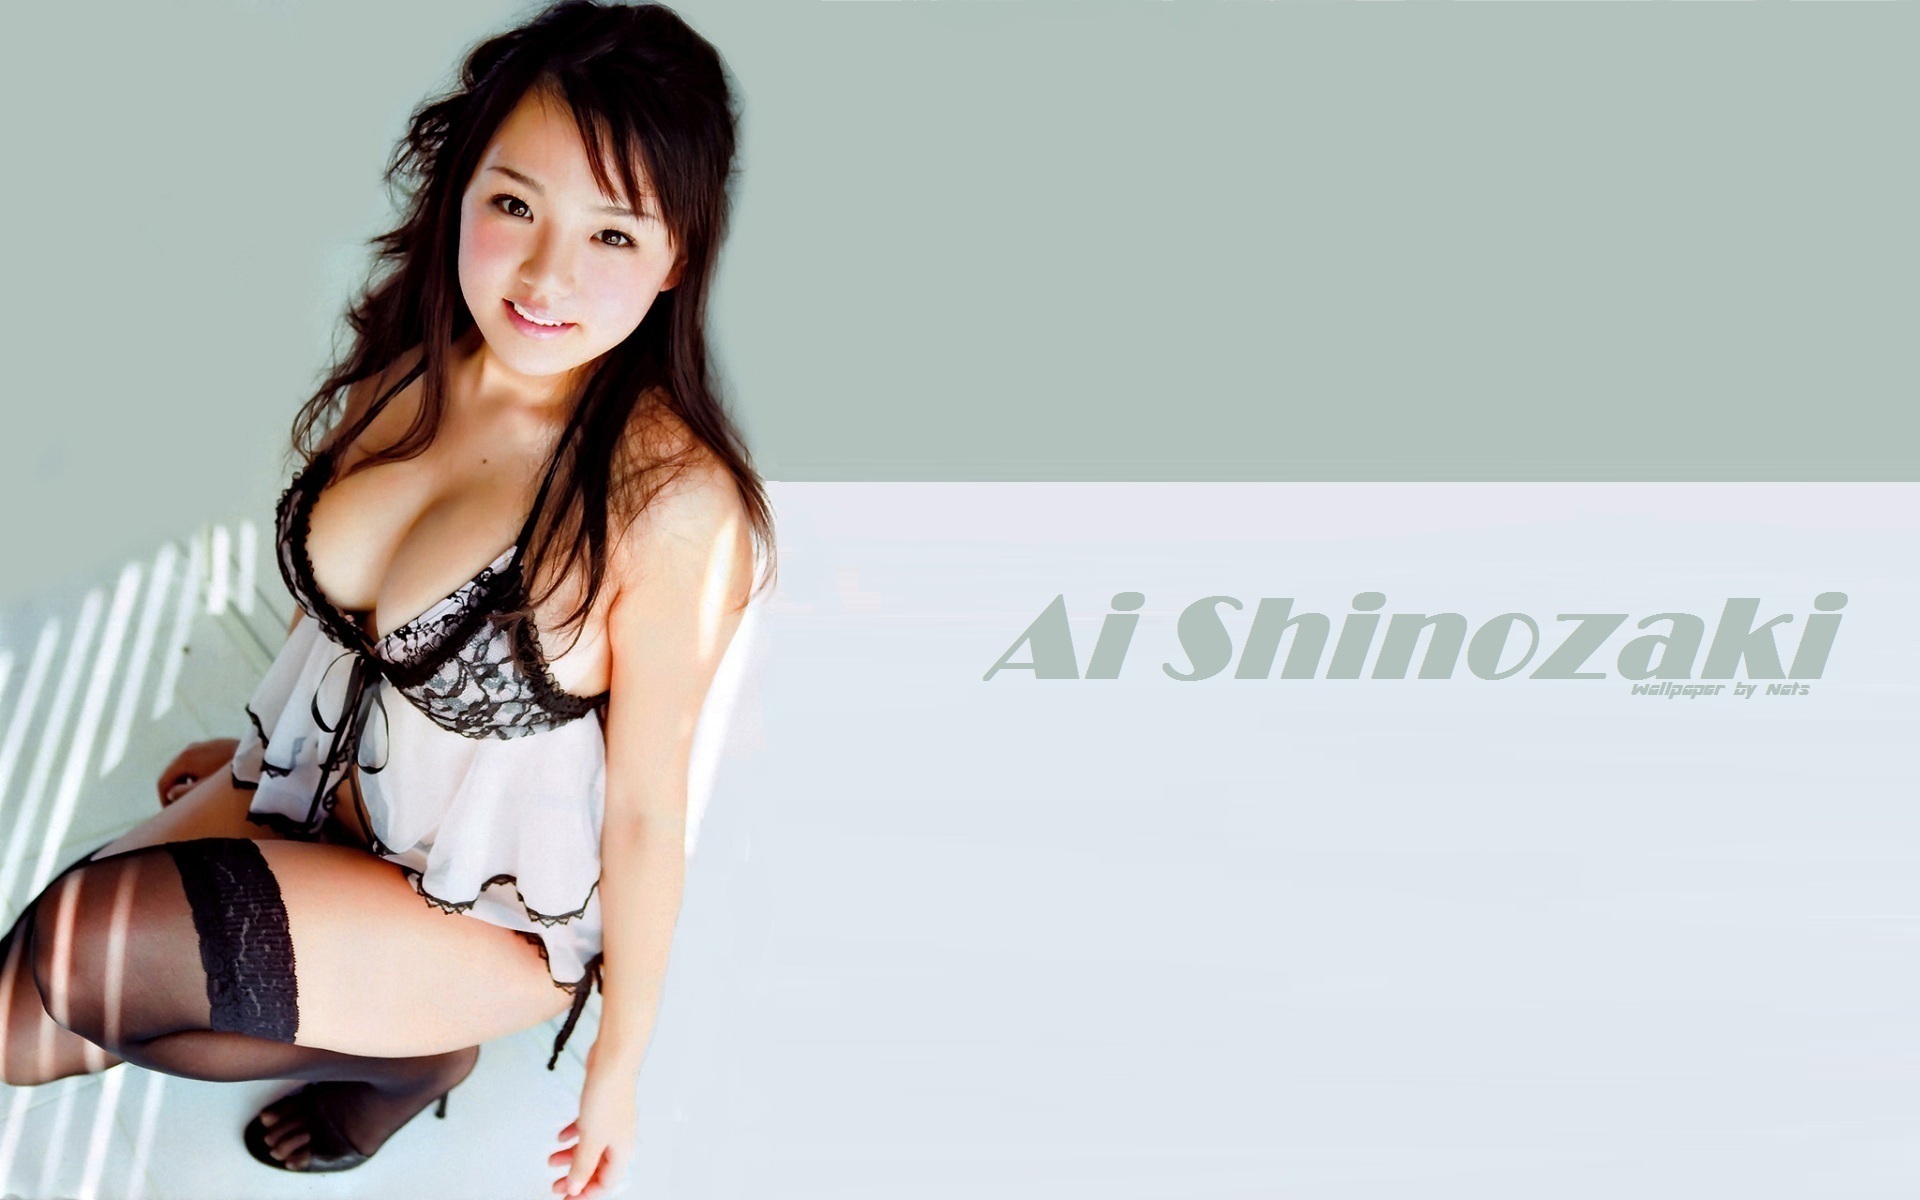 Download full size Ai Shinozaki wallpaper / Celebrities Female / 1920x1200